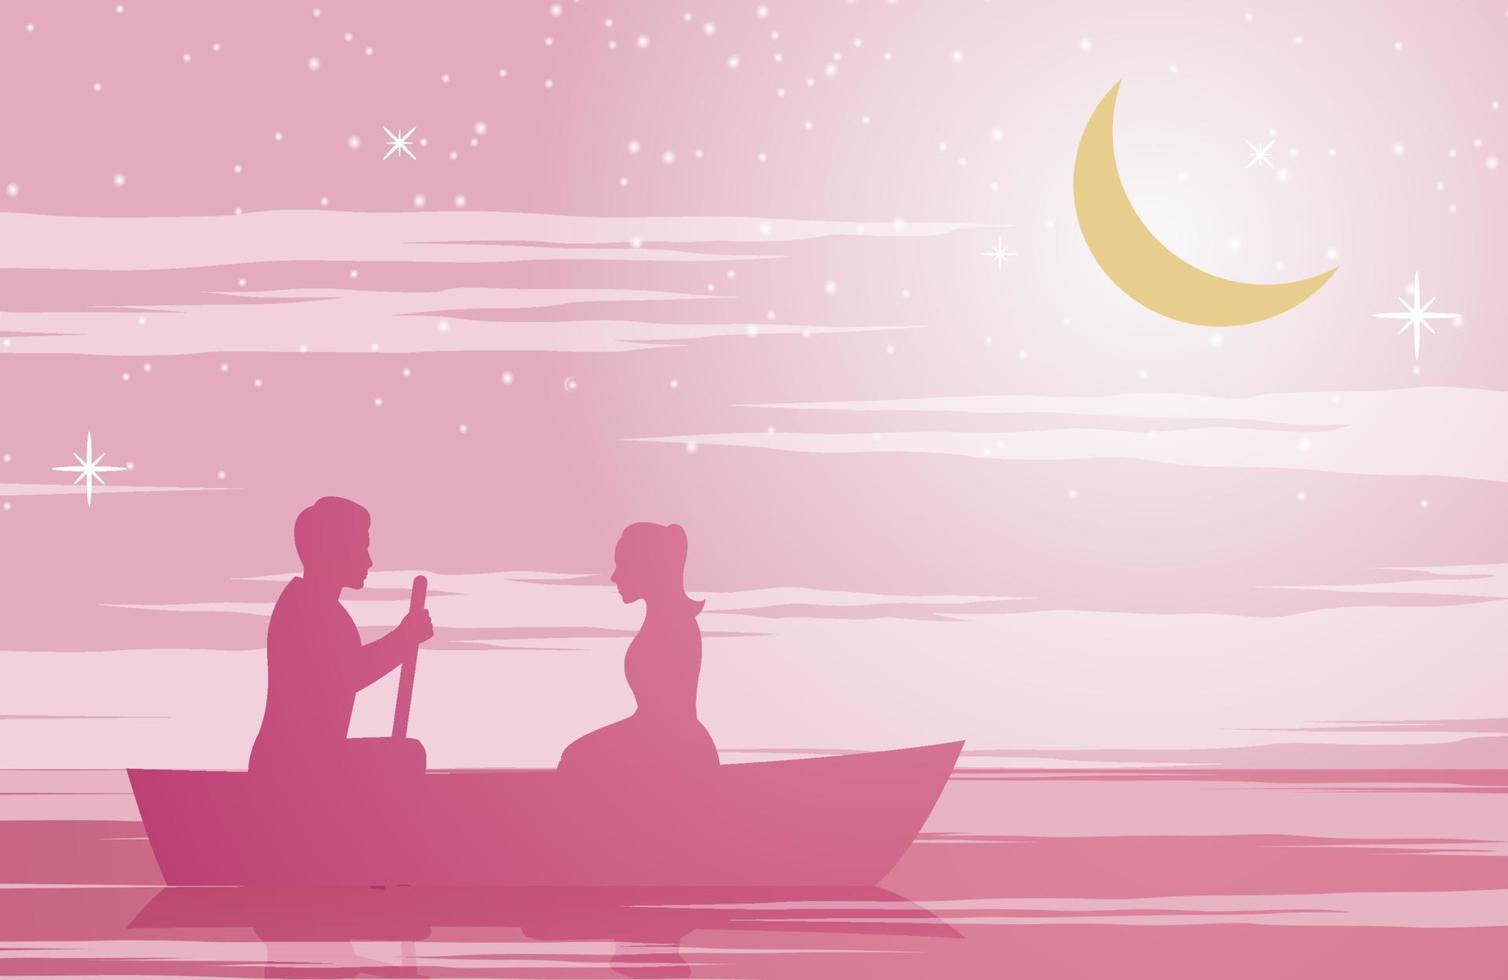 par sitter på båten. rosa färgton med siluettdesign vektor